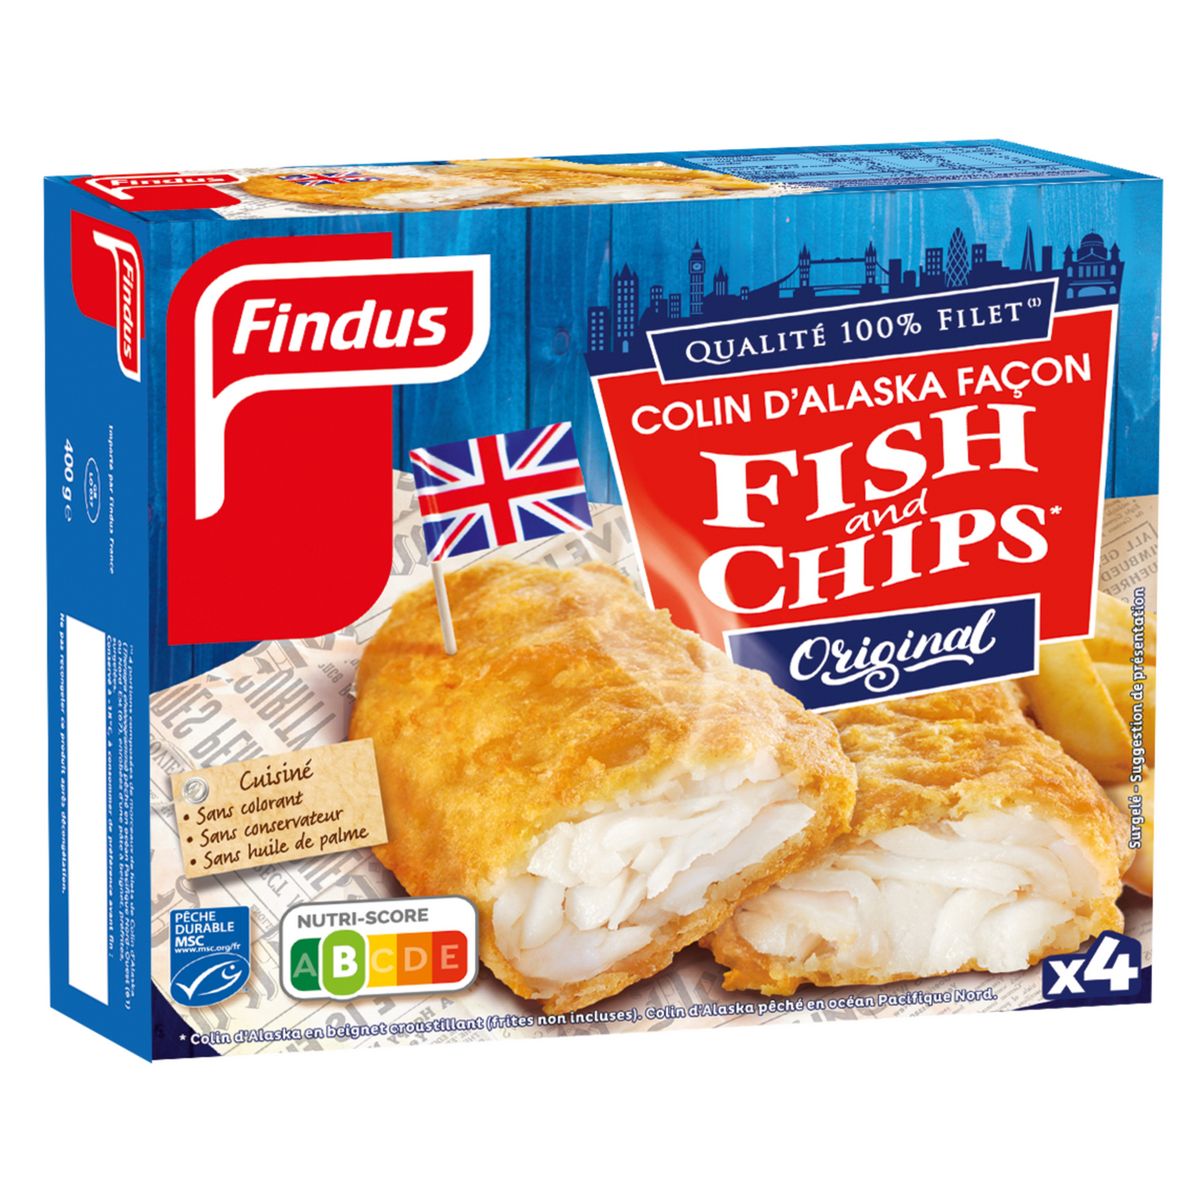 FINDUS Filet de colin d'Alaska façon fish & chips MSC 4 pièces 400g